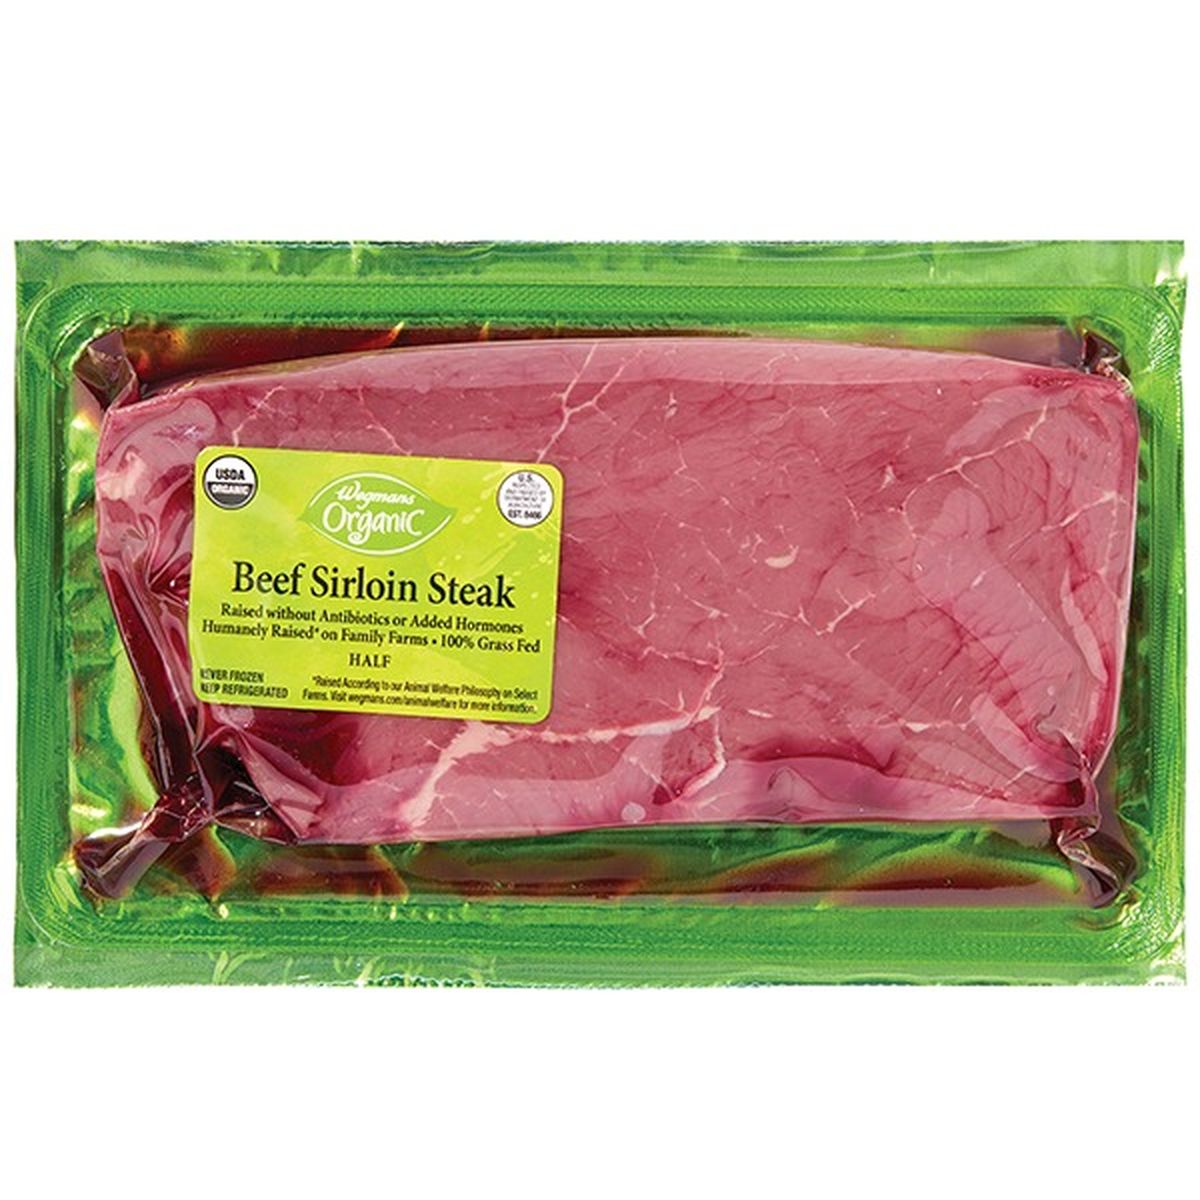 Calories in Wegmans Organic Grass Fed Sirloin Steak Half